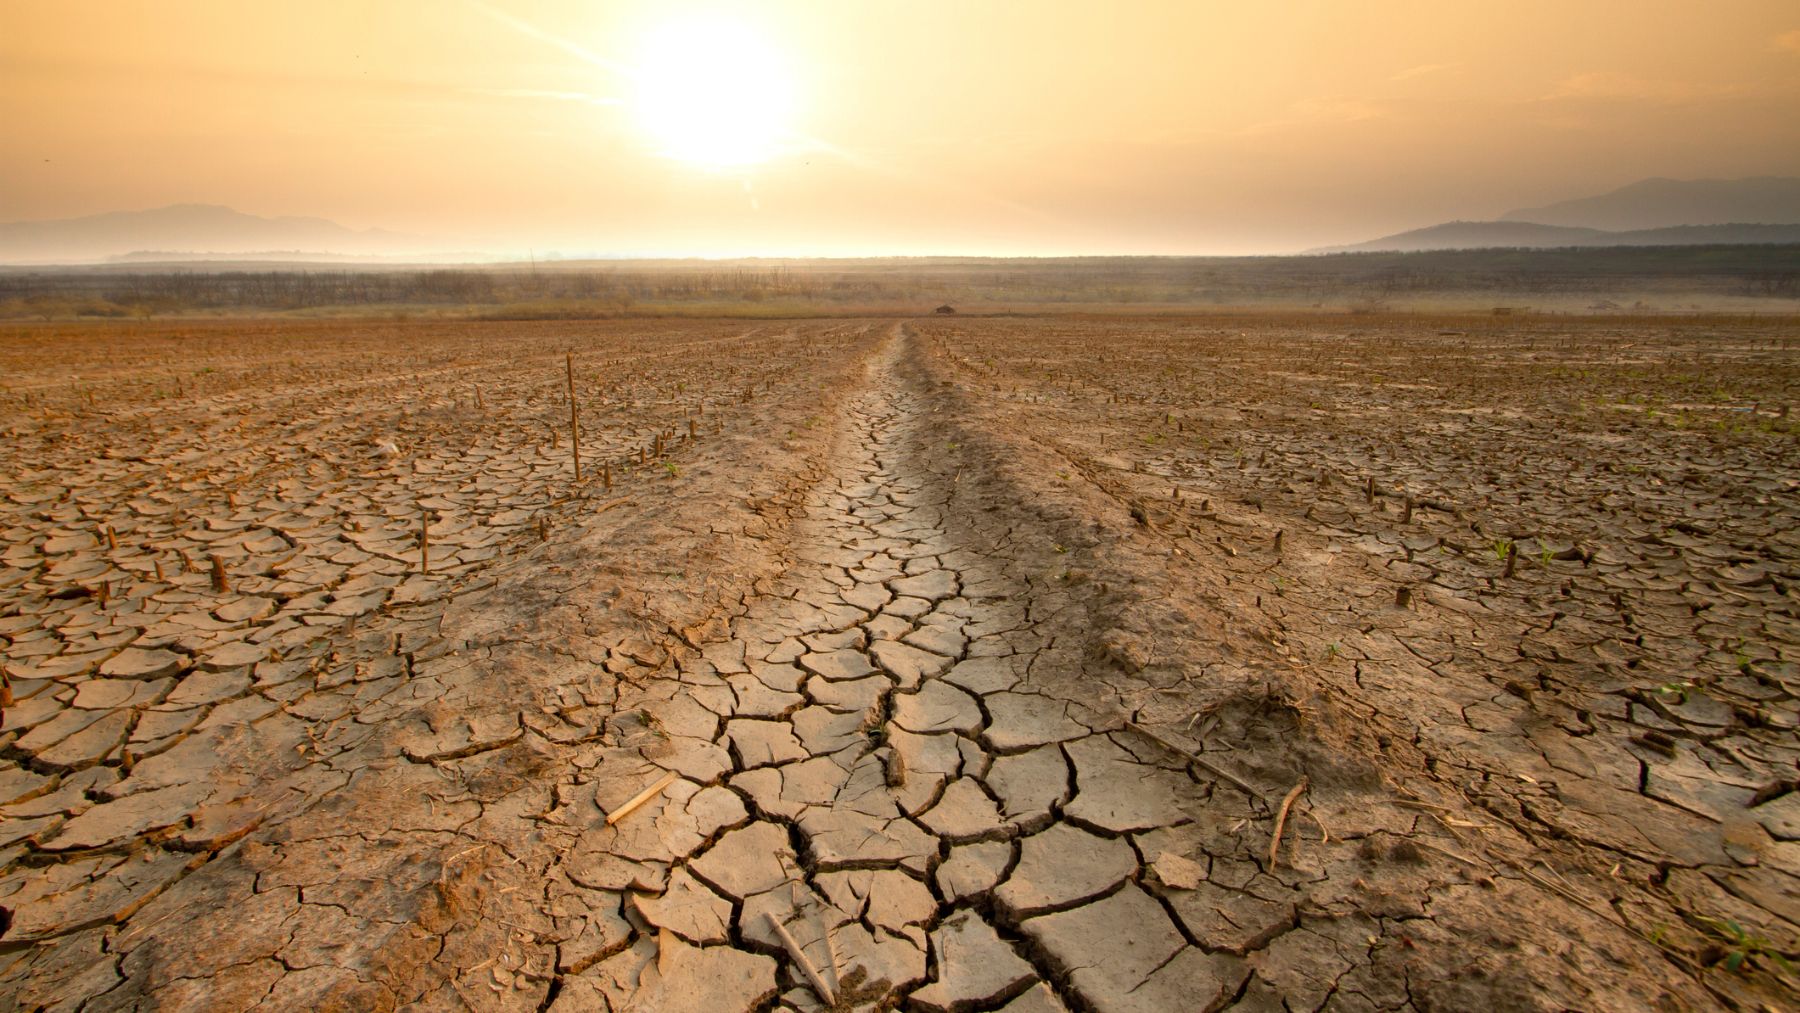 El impacto económico de la sequía en España se cifra en unos 4,6 billones de euros hasta el año 2050